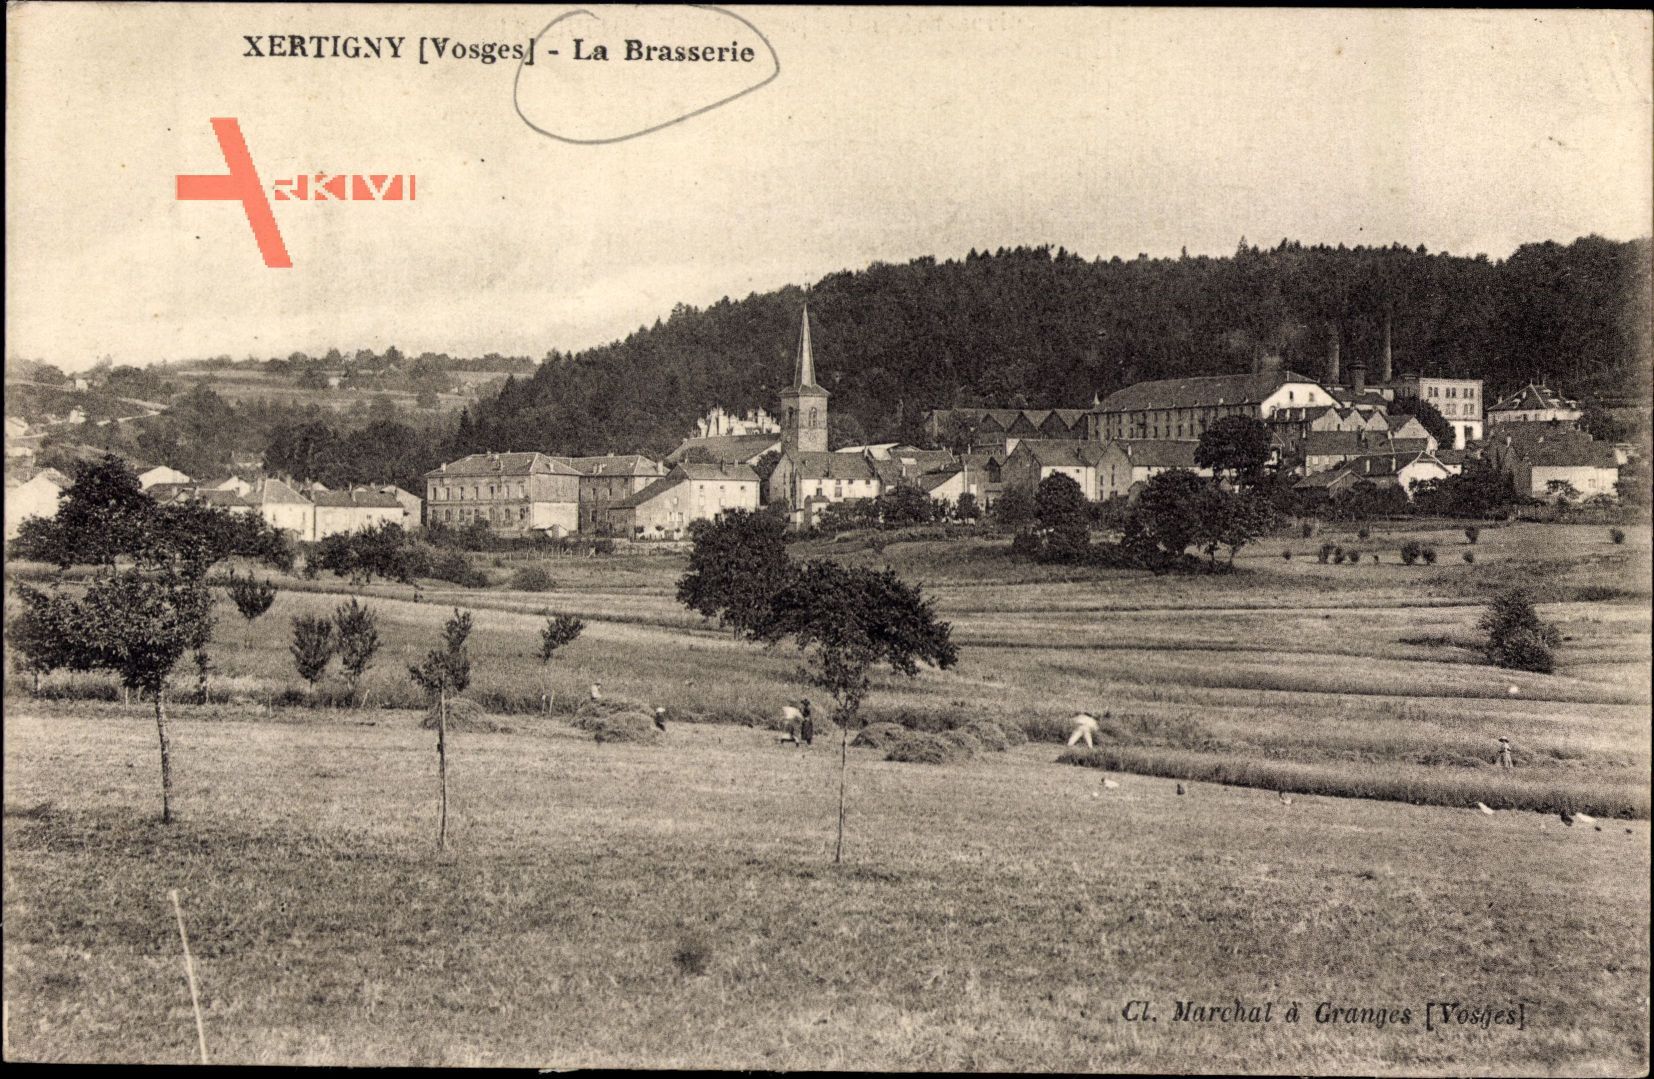 Xertigny Vosges, La Brasserie, Blick auf den Ort und die Brauerei